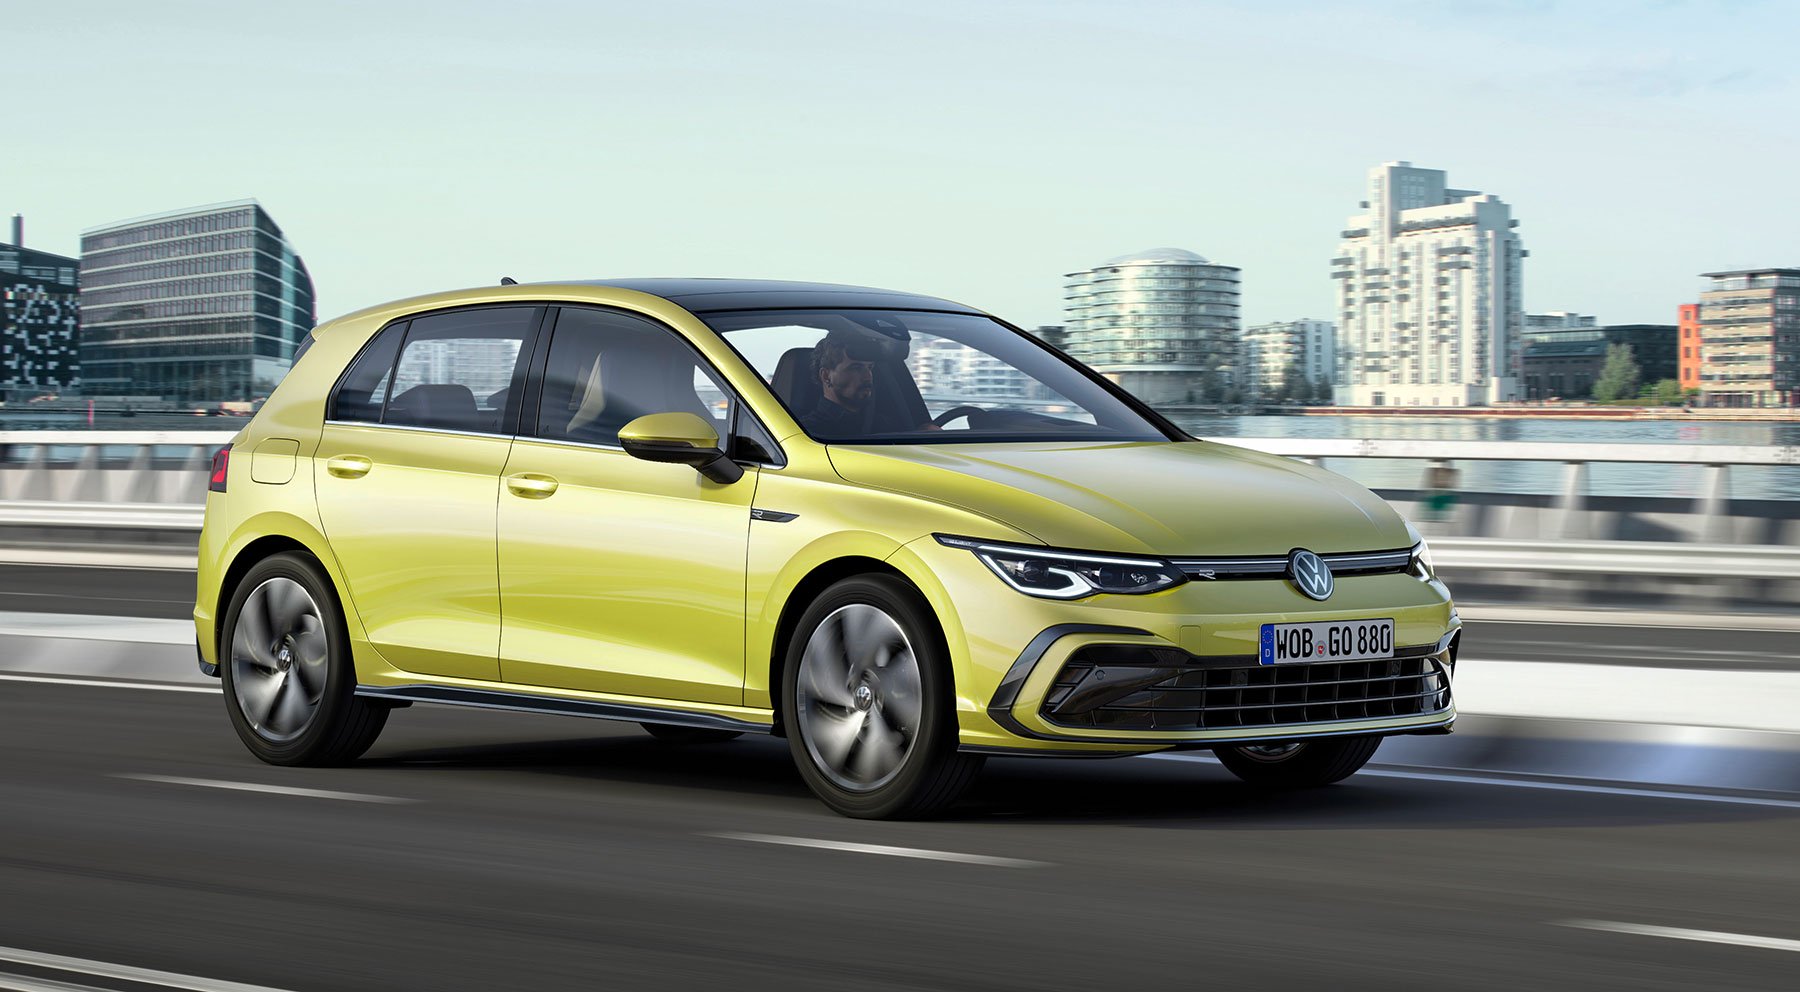 2020 Volkswagen Golf (Mk8) yeni görüntülerle tamamen ortaya çıktı